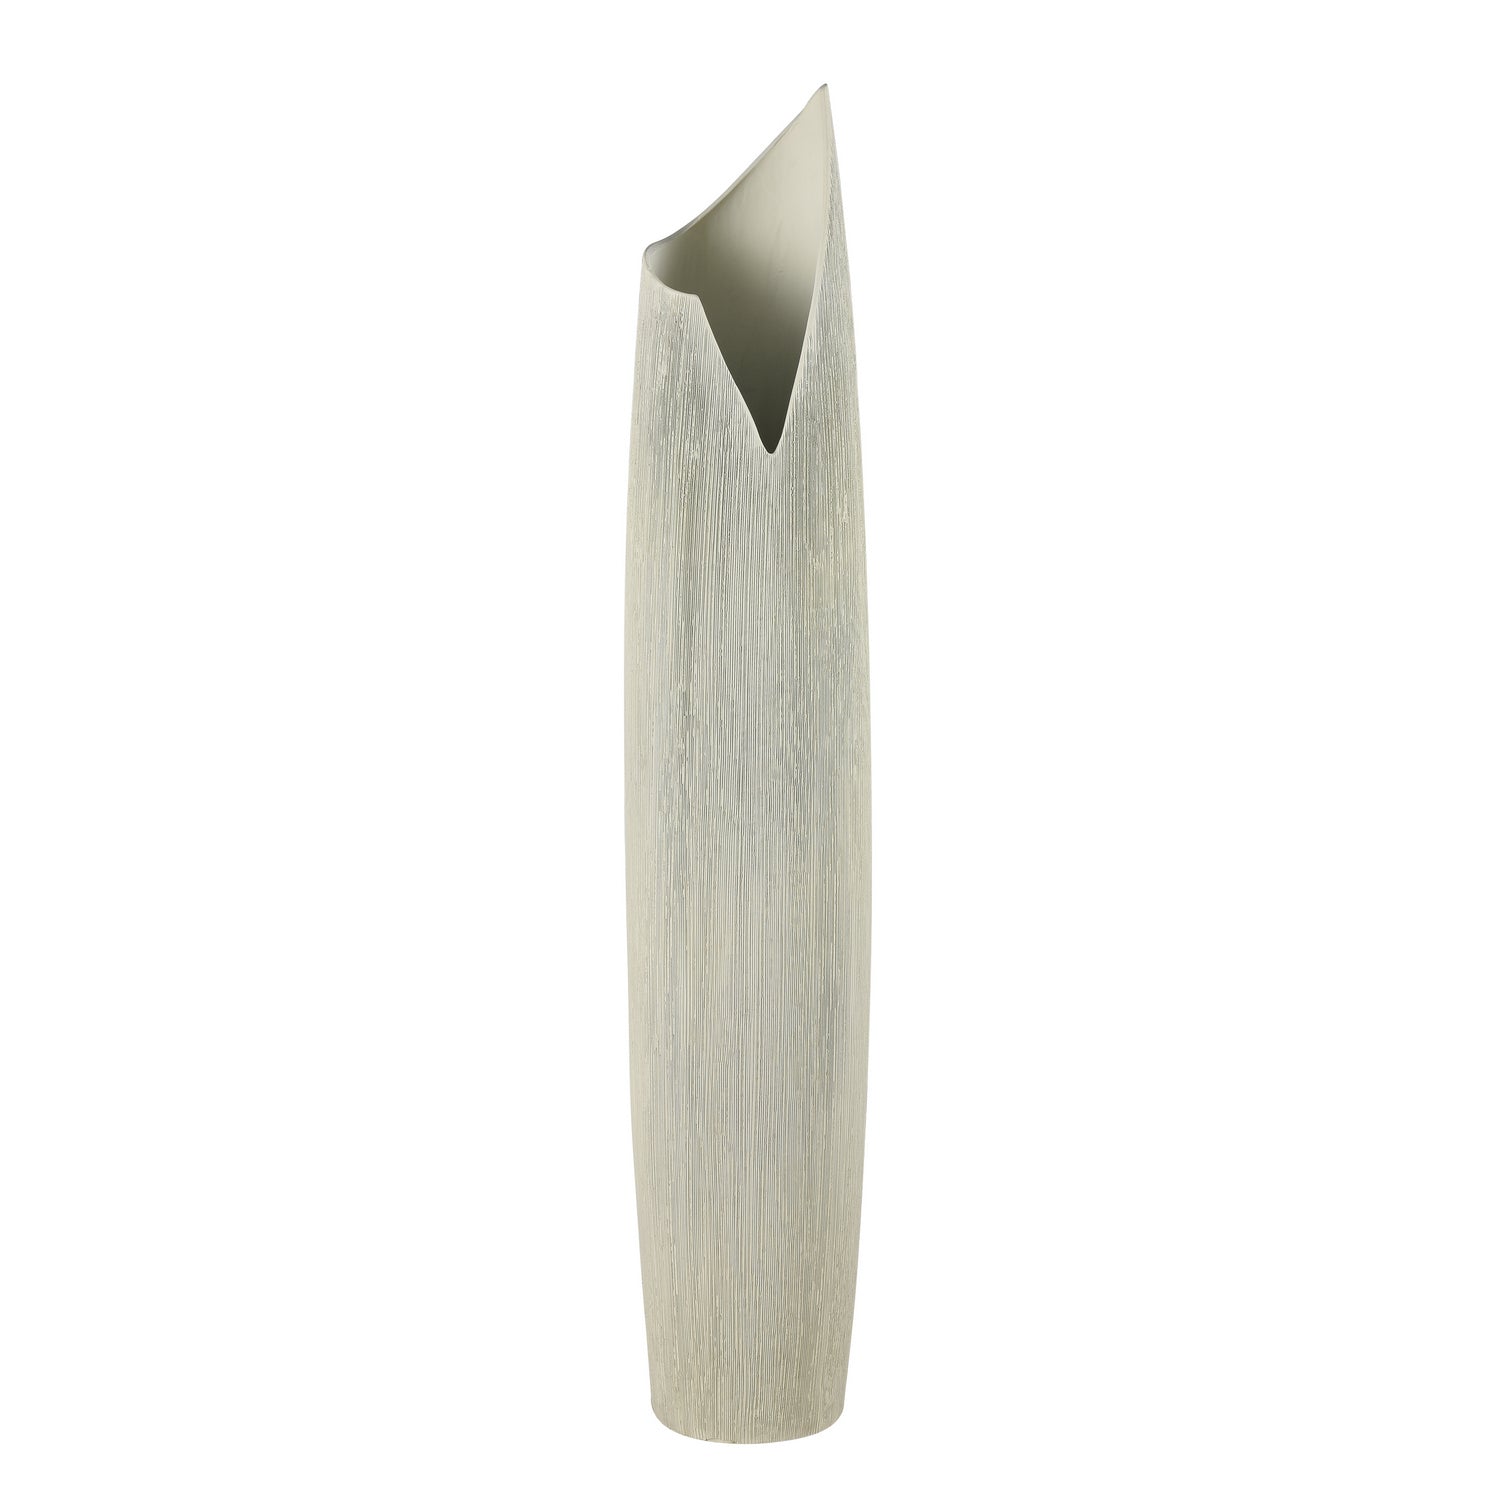 ELK Home - H0017-9739 - Vase - Swerve - Off White